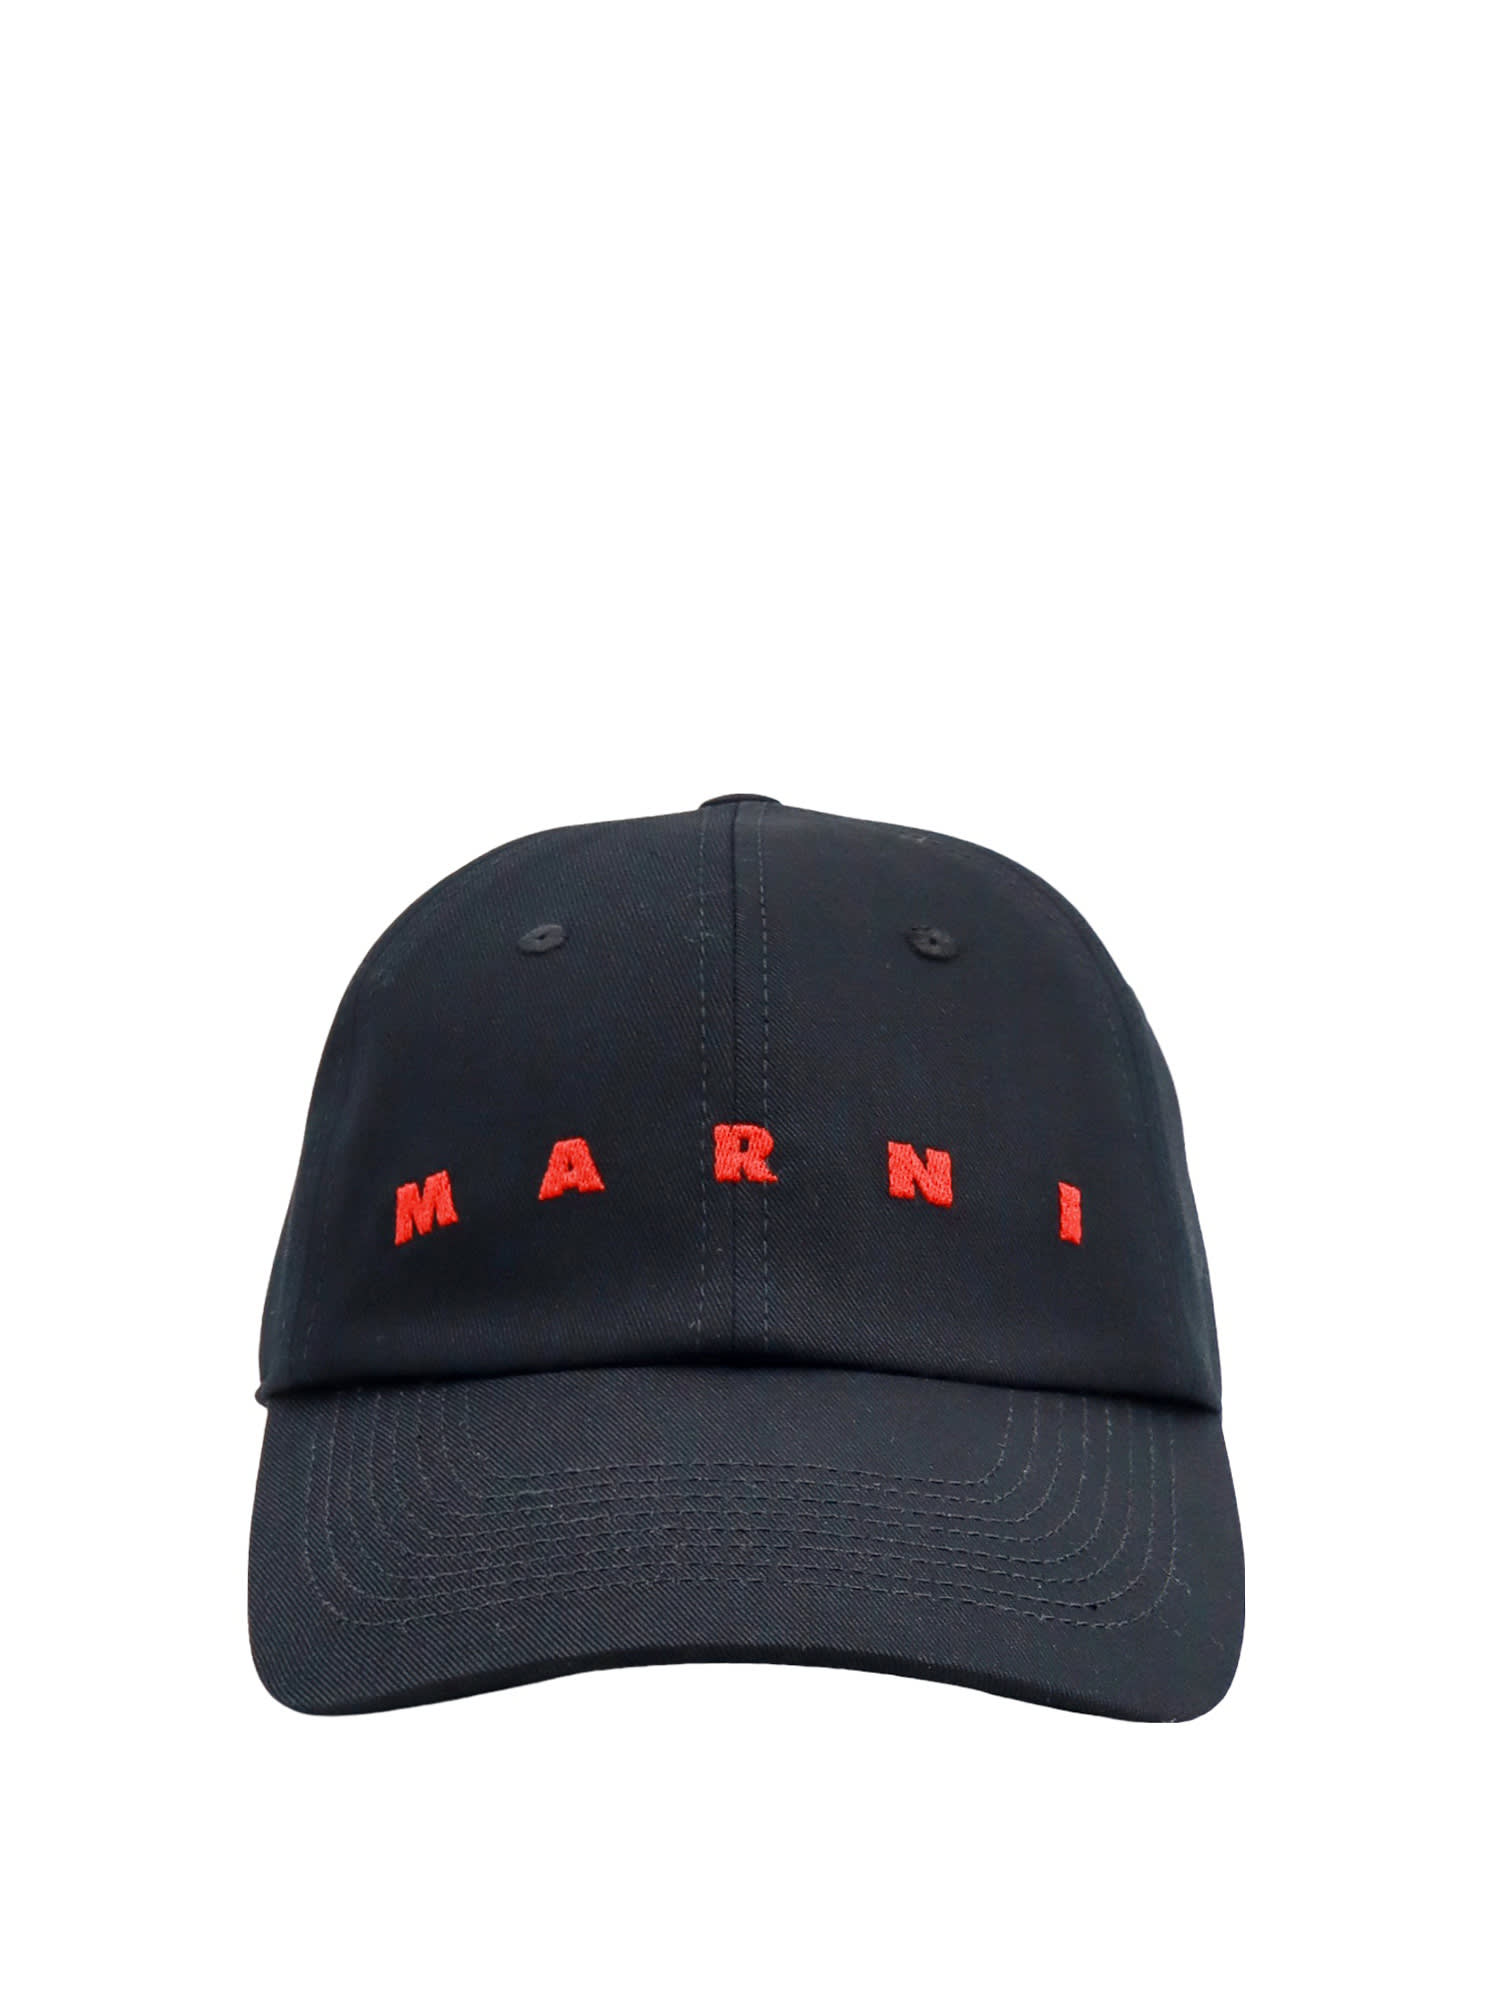 MARNI HAT